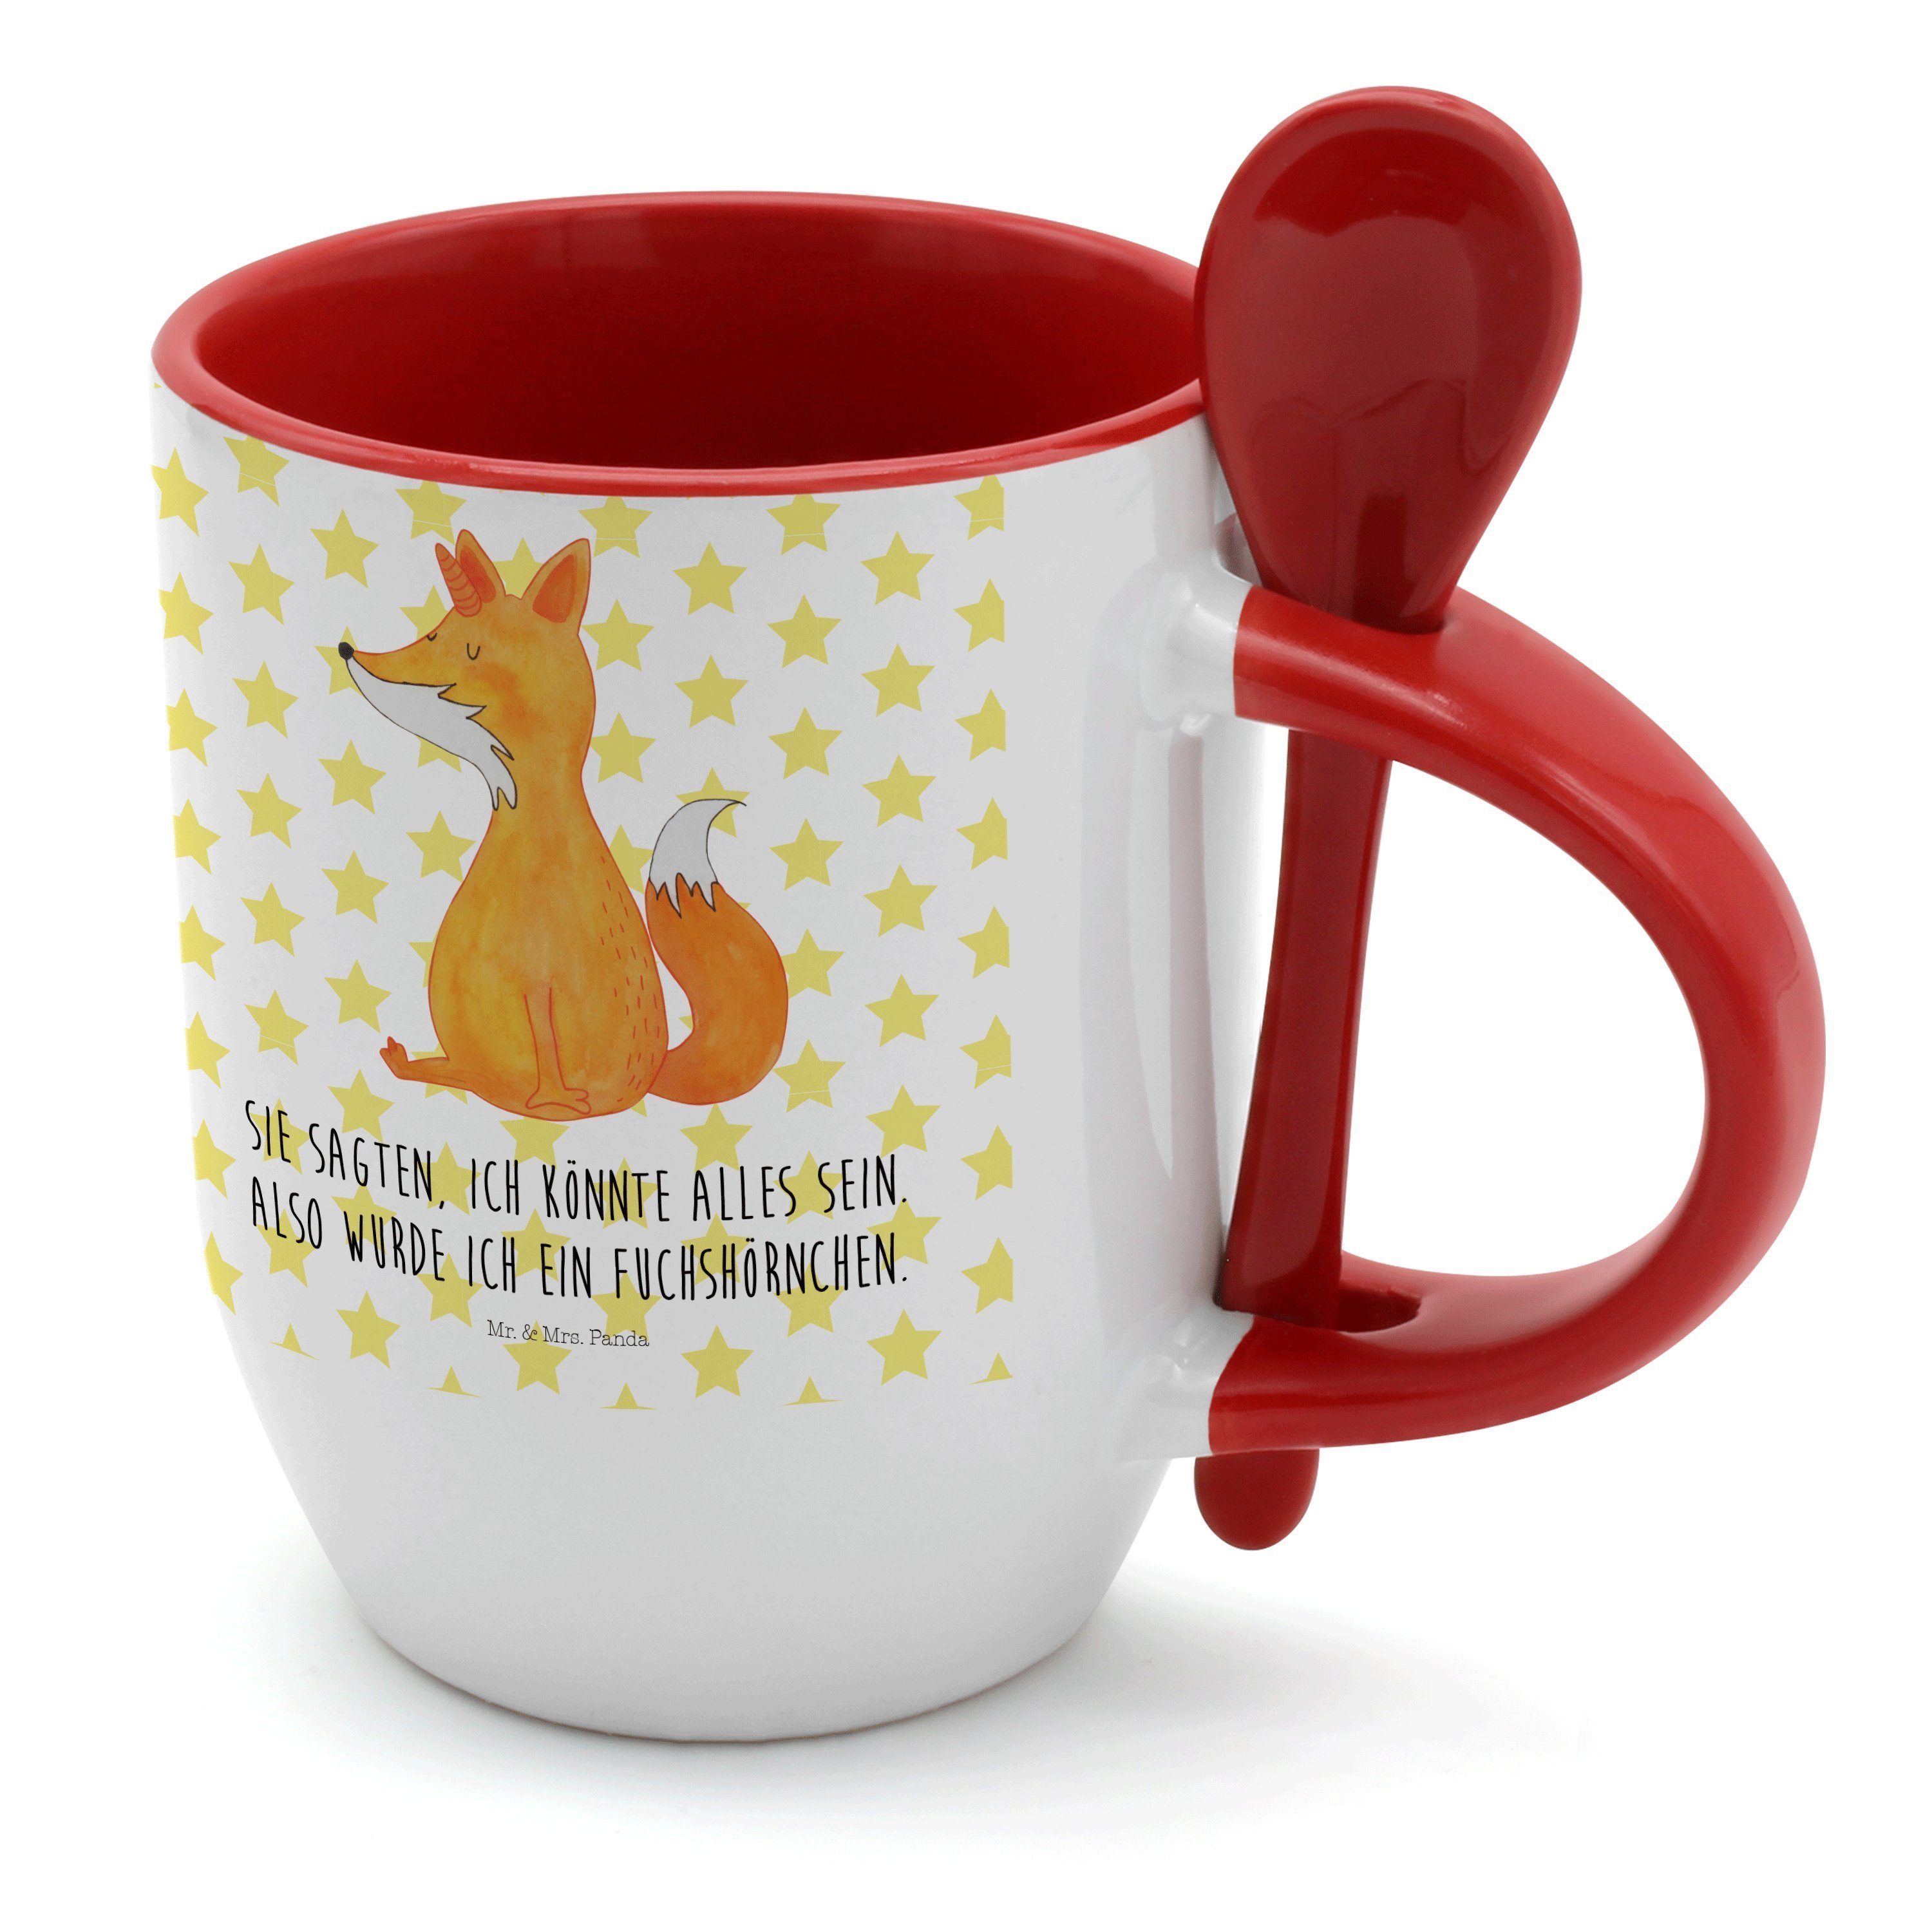 Mr. & Mrs. Panda Tasse Fuchshörnchen - Weiß - Geschenk, Kaffeetasse, Tassen, Einhorn, Tasse, Keramik